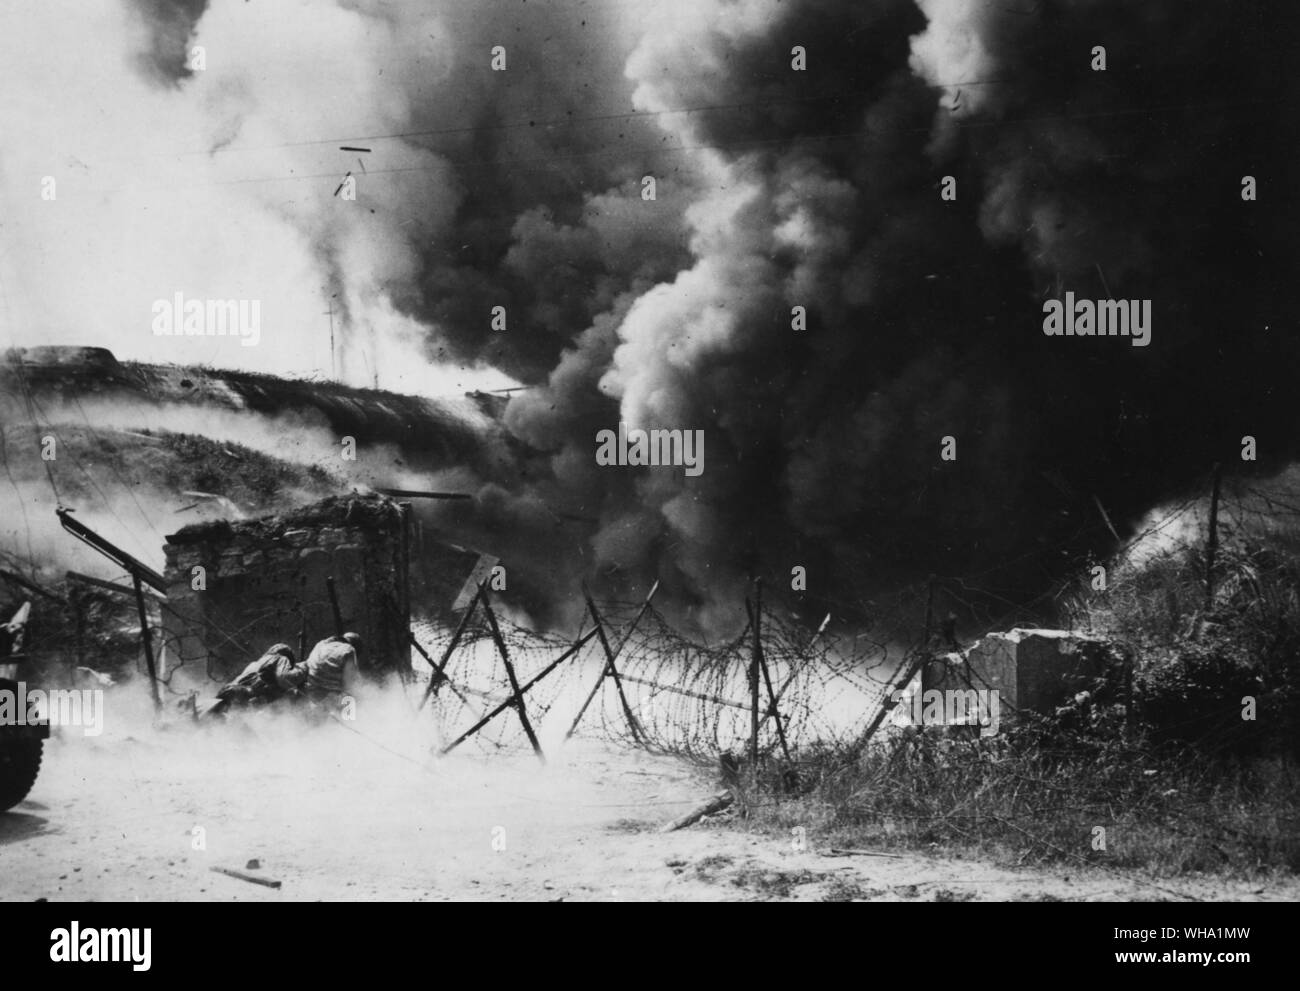 WW2: Kampf für Cherbourg: riesige Massen von Rauch aufstieg als Pole gebühren Blast ein Nazi Bunker, einer der Deutschen äußeren Verteidigung von Cherbourg, Frankreich. Auf der linken Seite befinden sich zwei Amerikaner, einige von denen, die den großen tiefwasserhafen am 27 Juni 1944 erfasst, die von der Explosion. Stockfoto